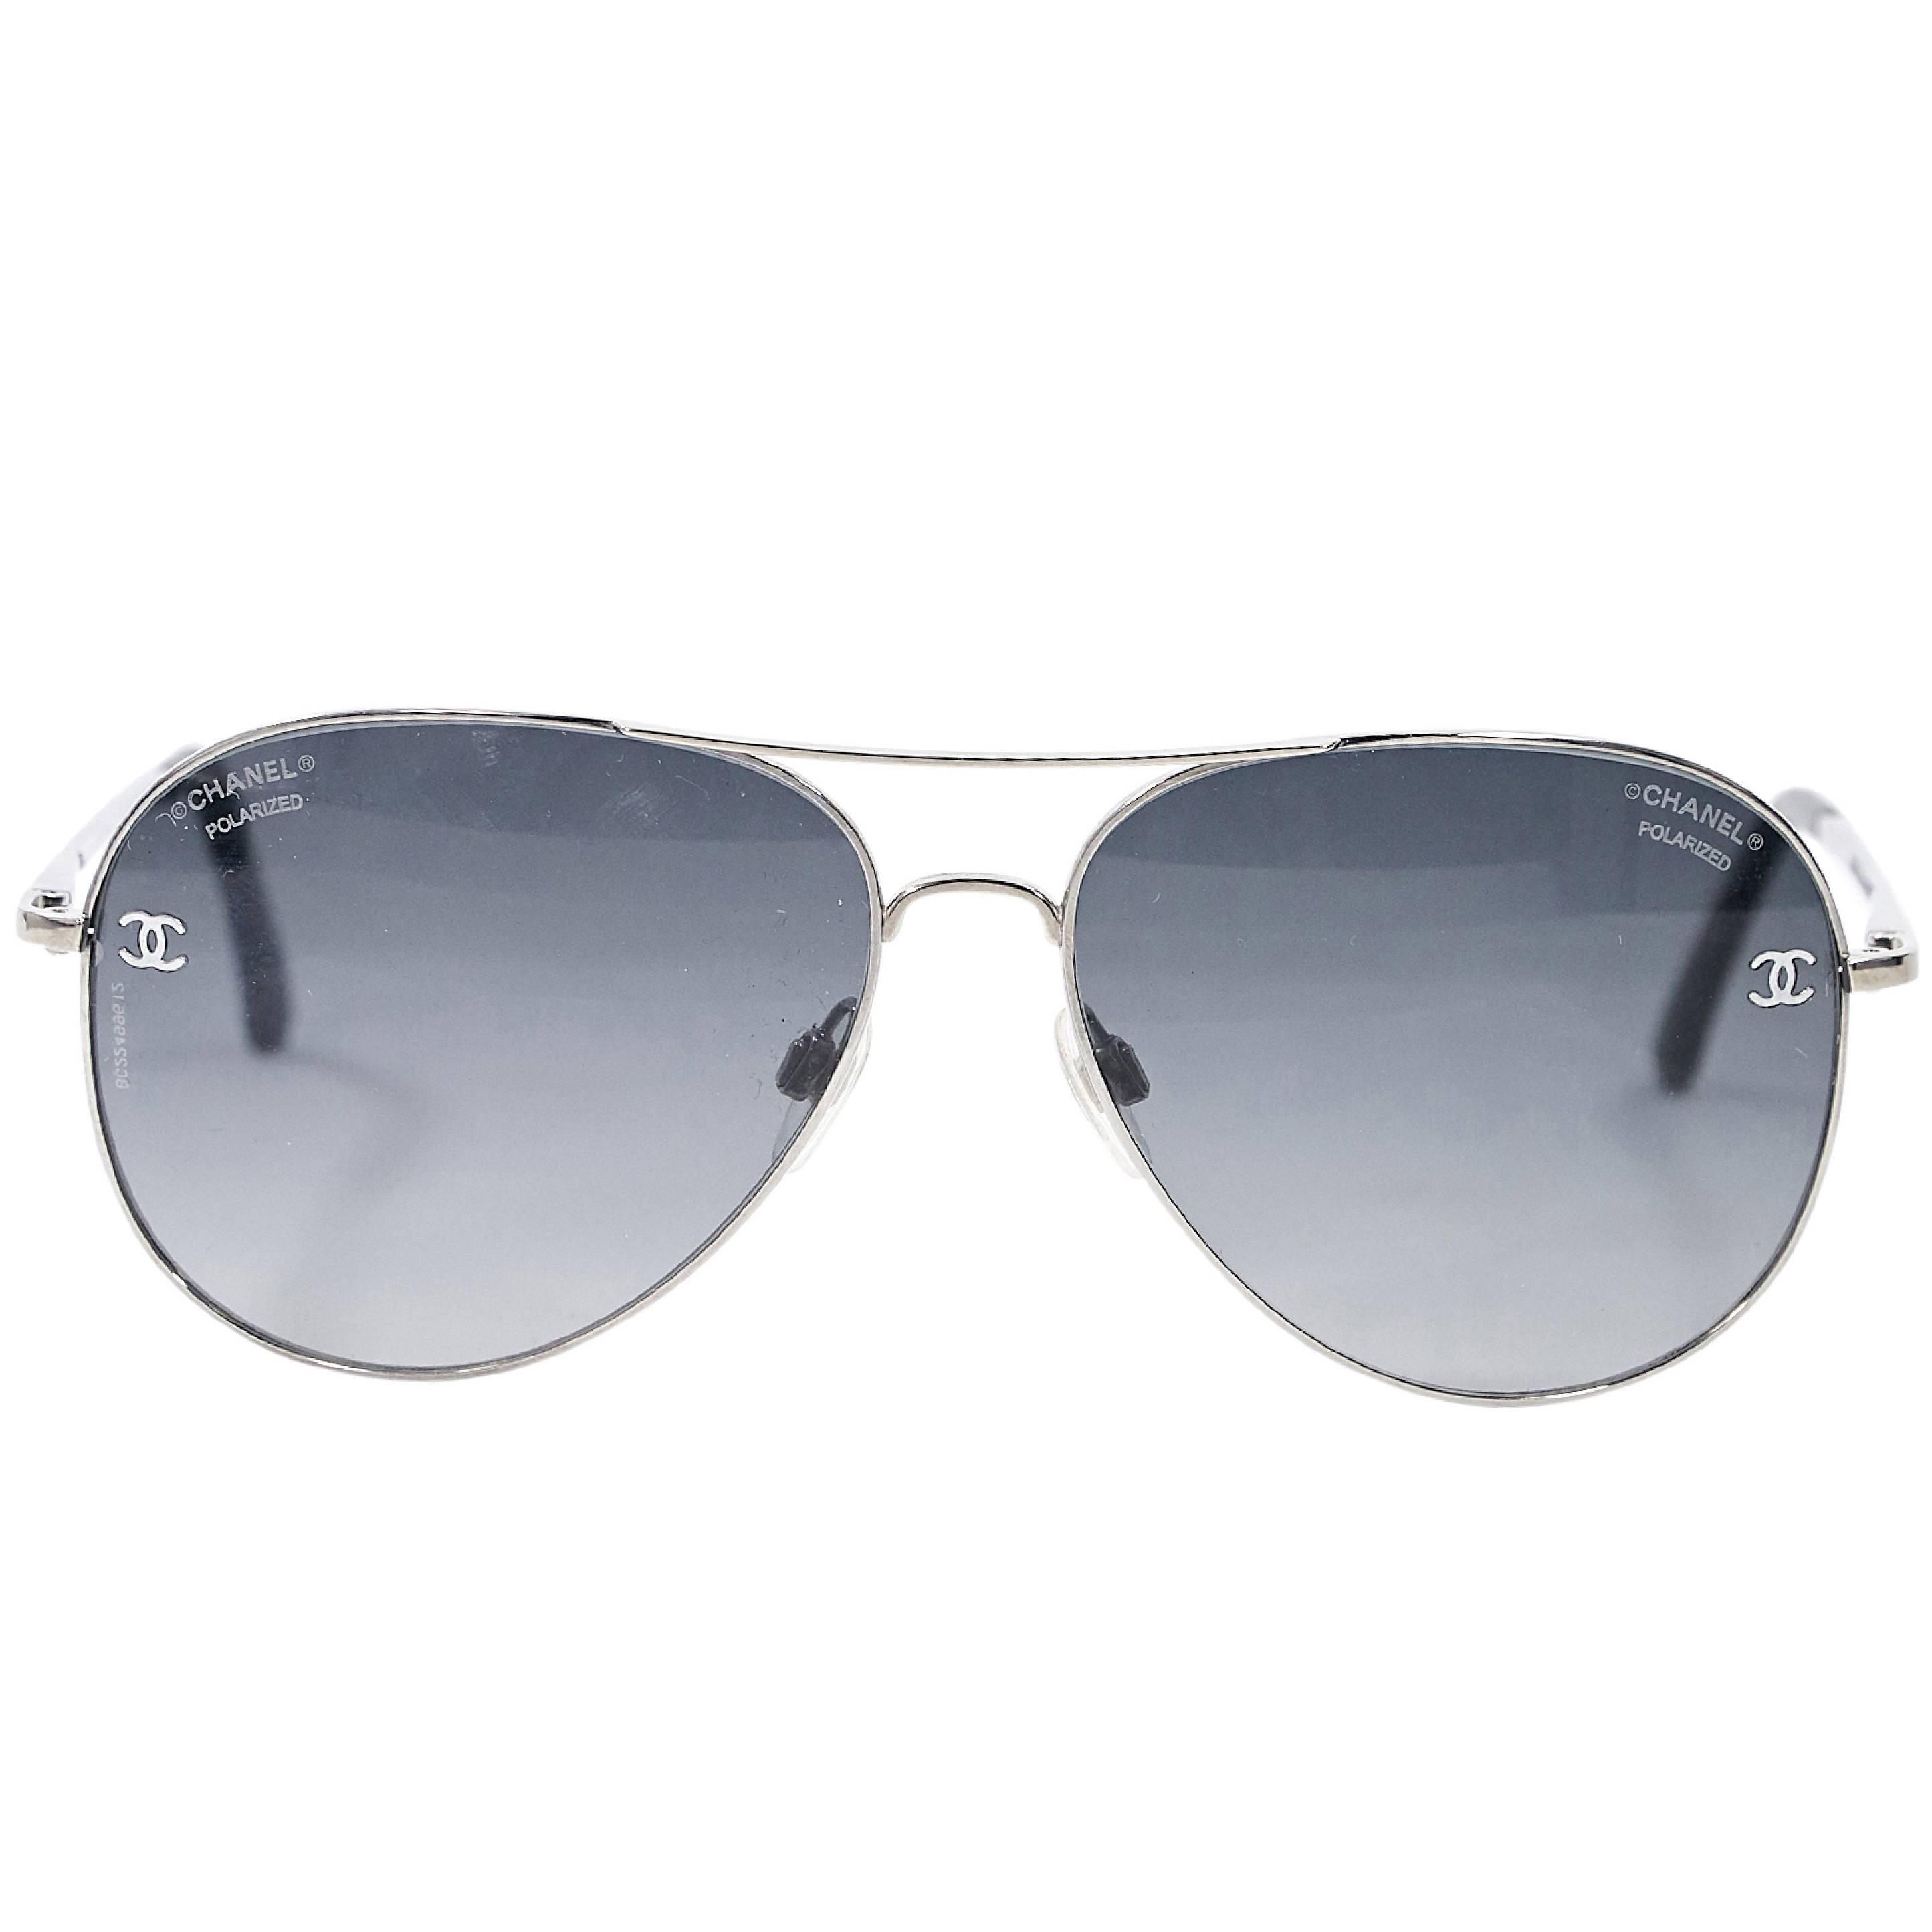 Silvertone Chanel Aviator Sunglasses